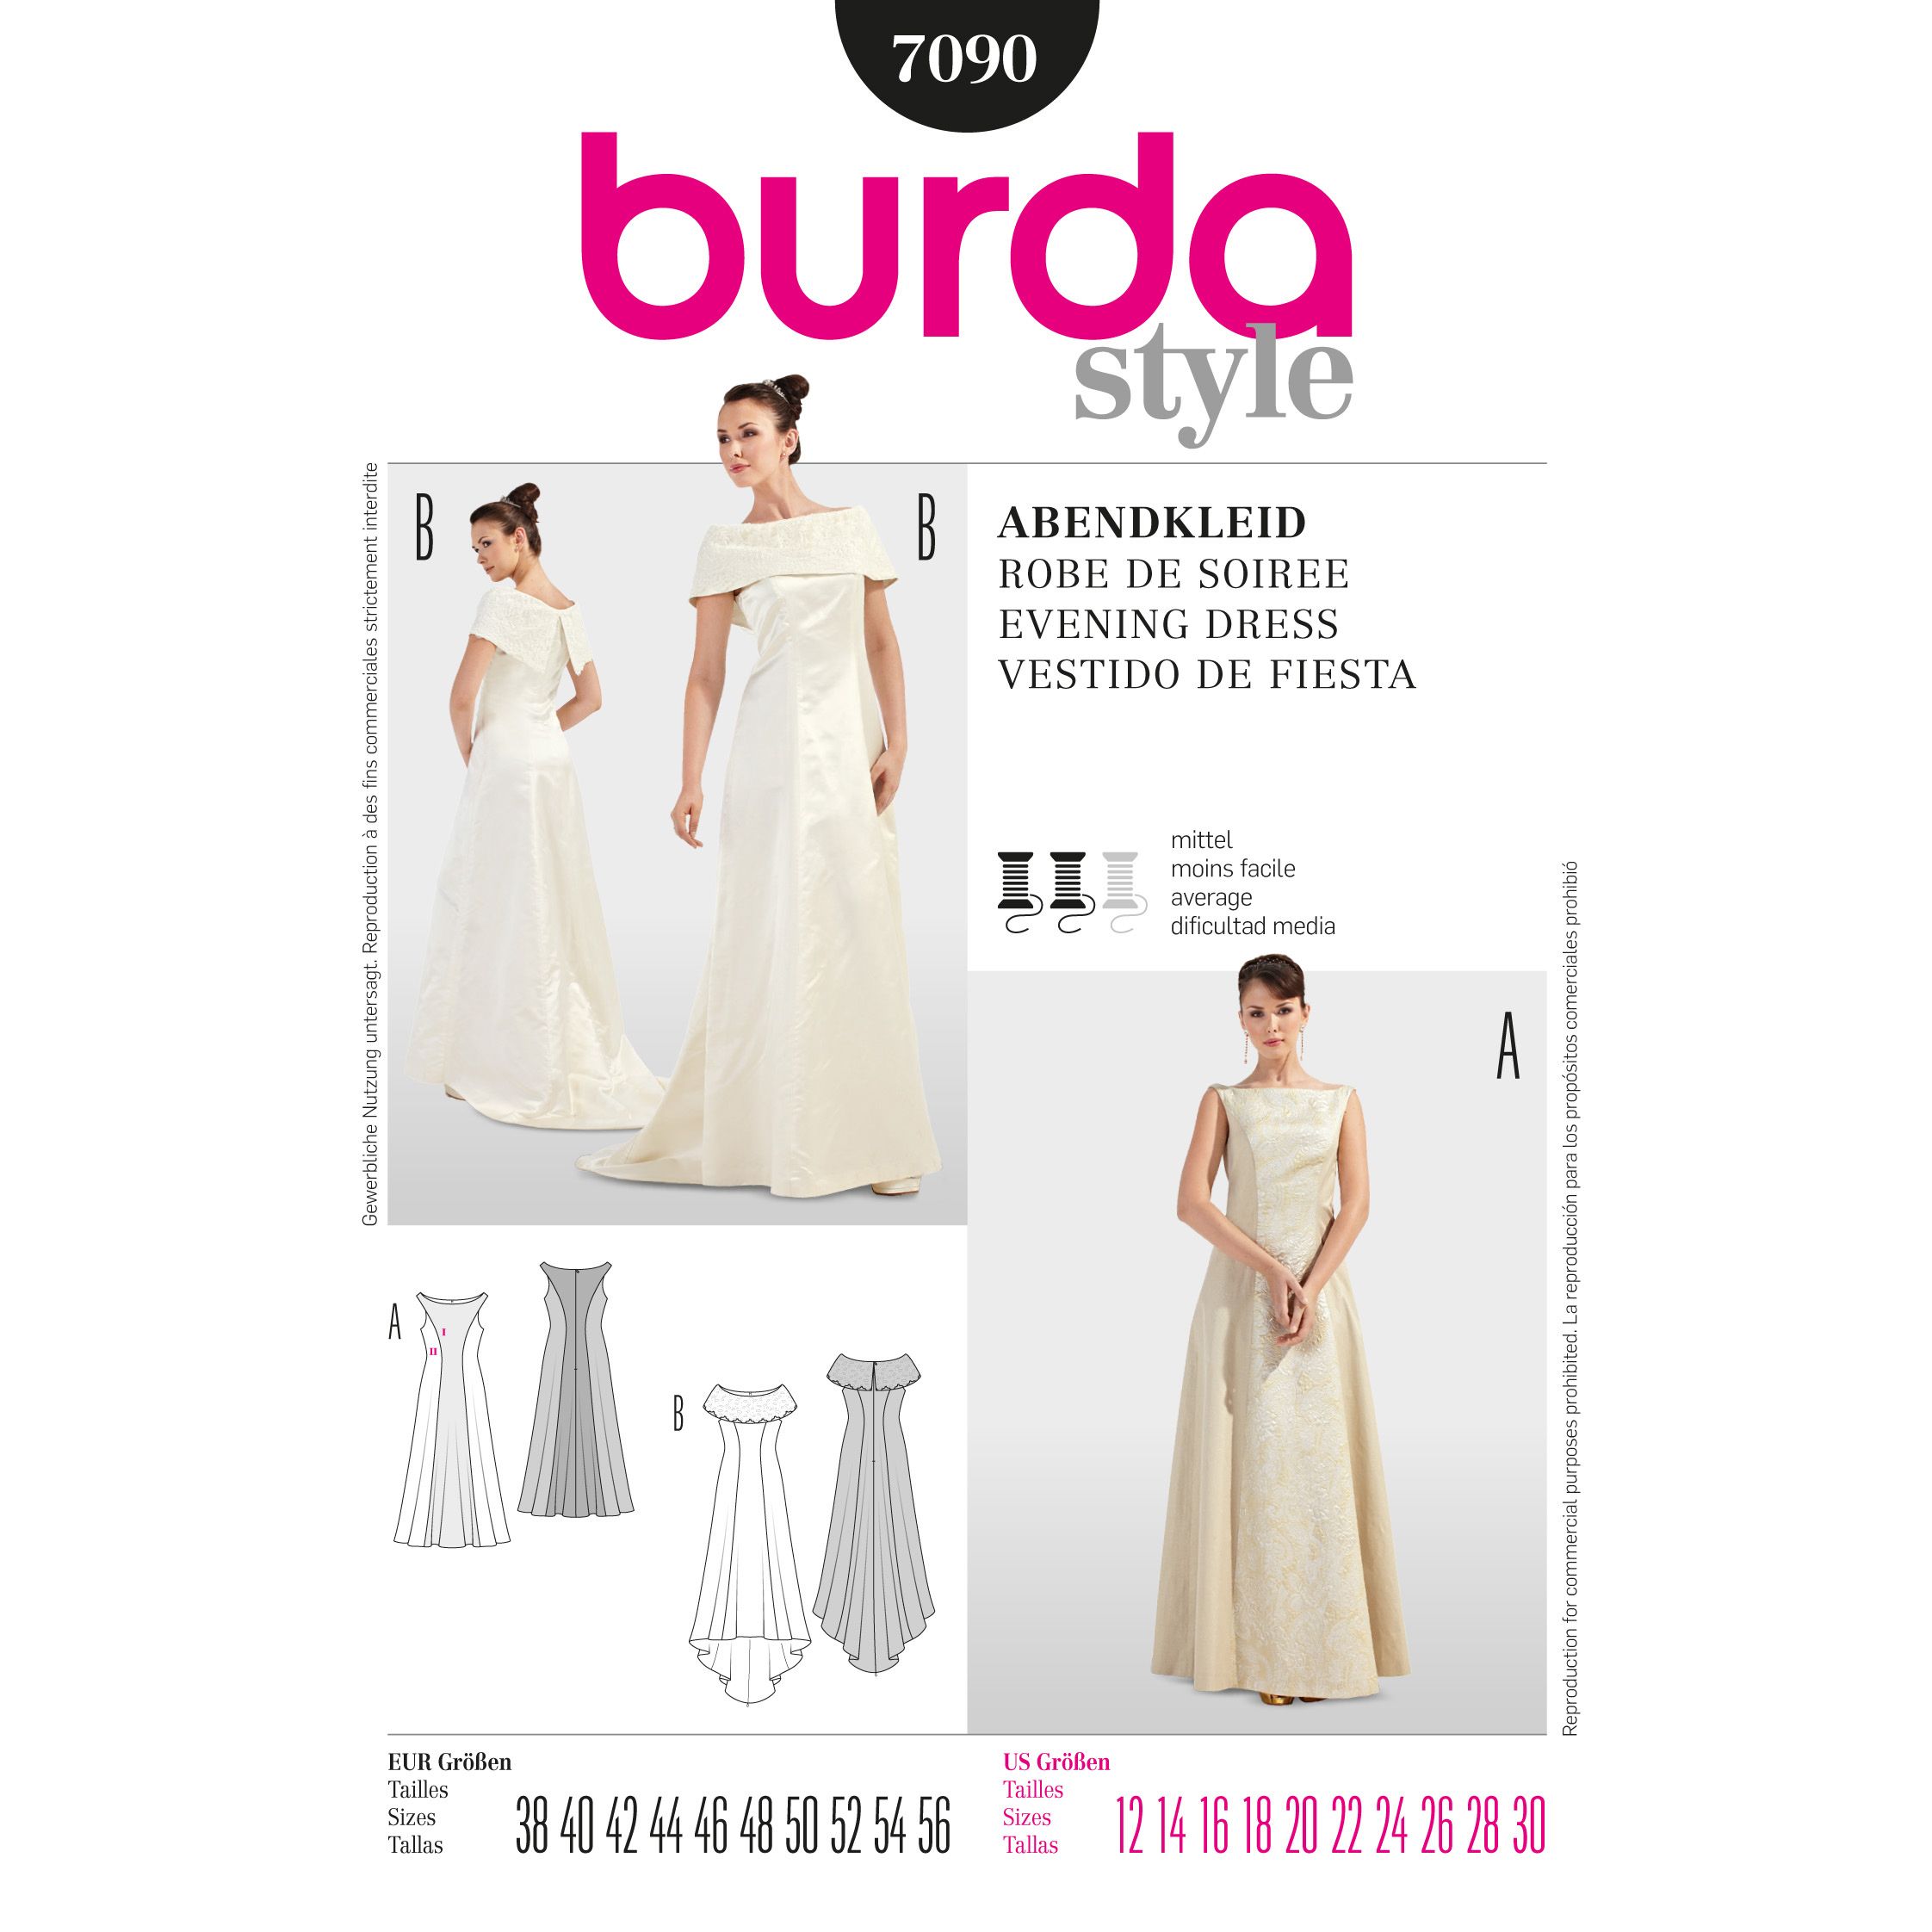 burda wedding dress 2019